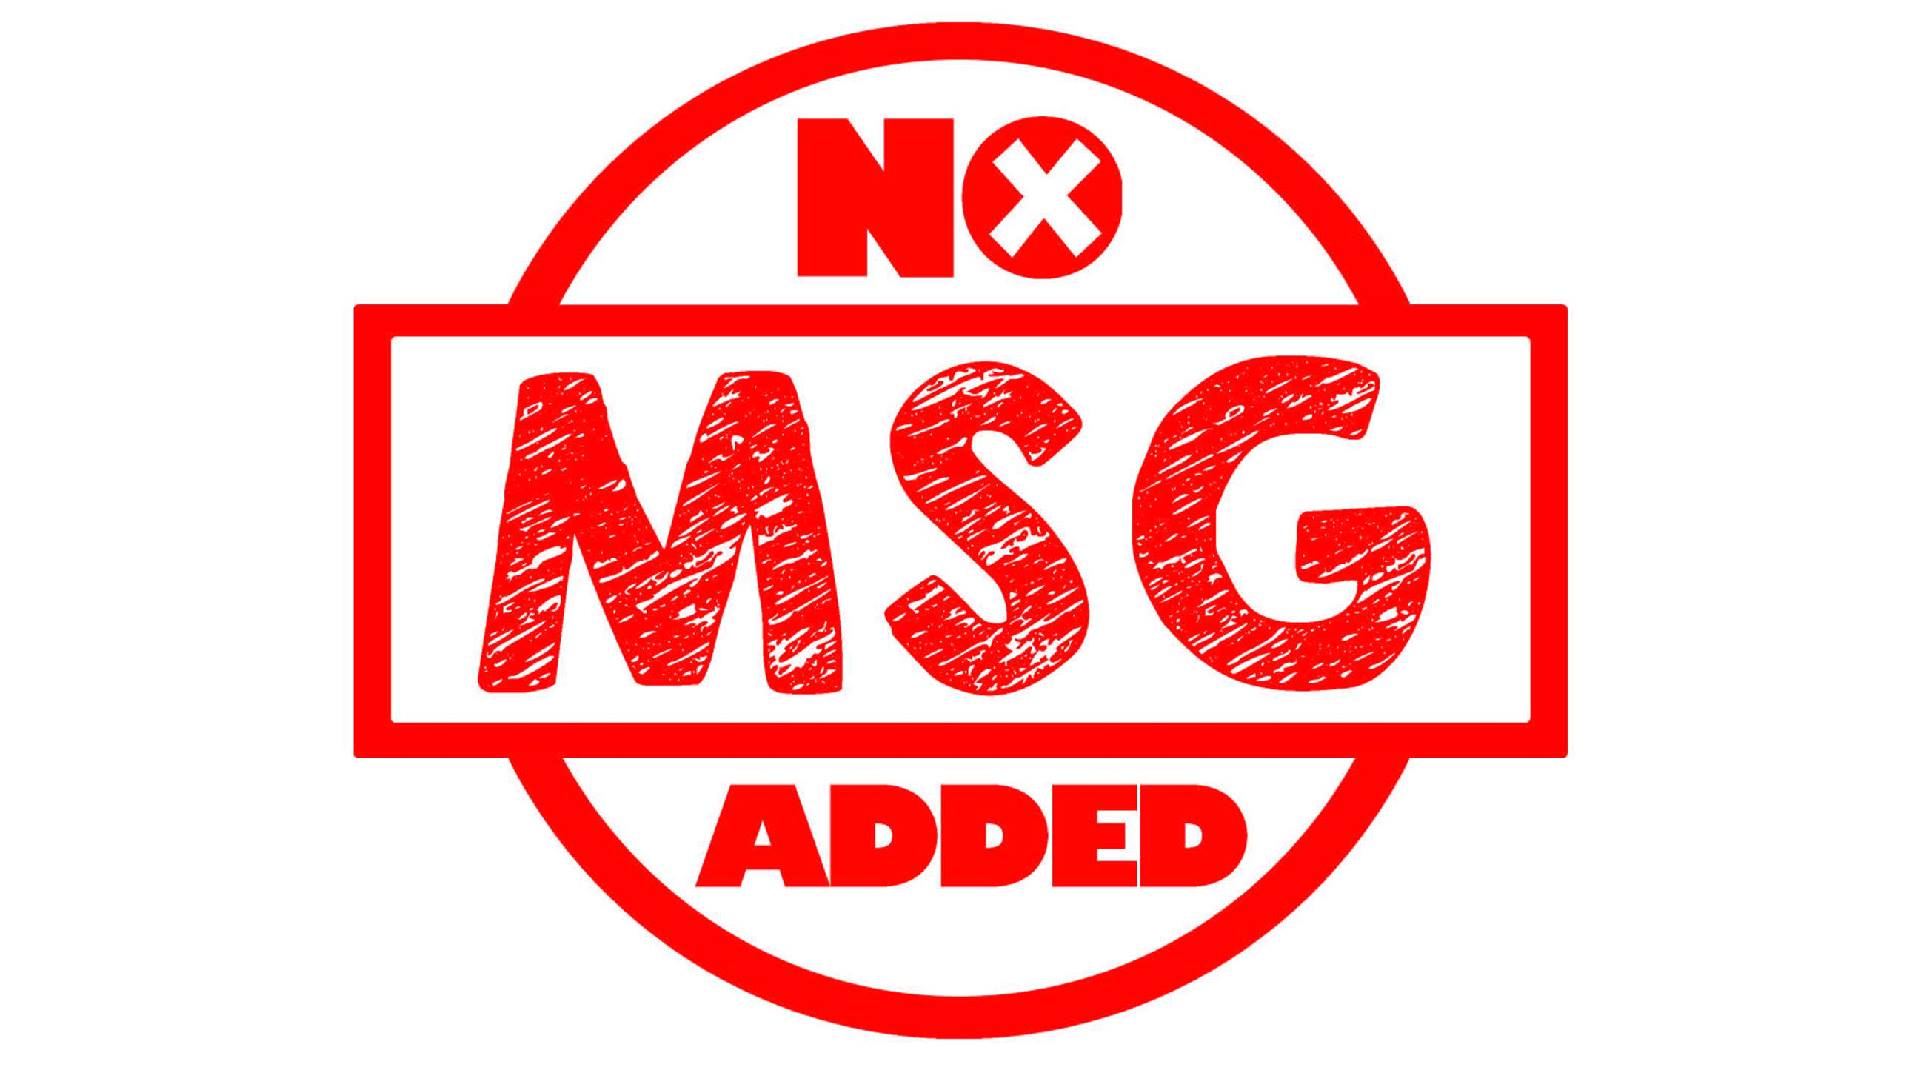 Msg user